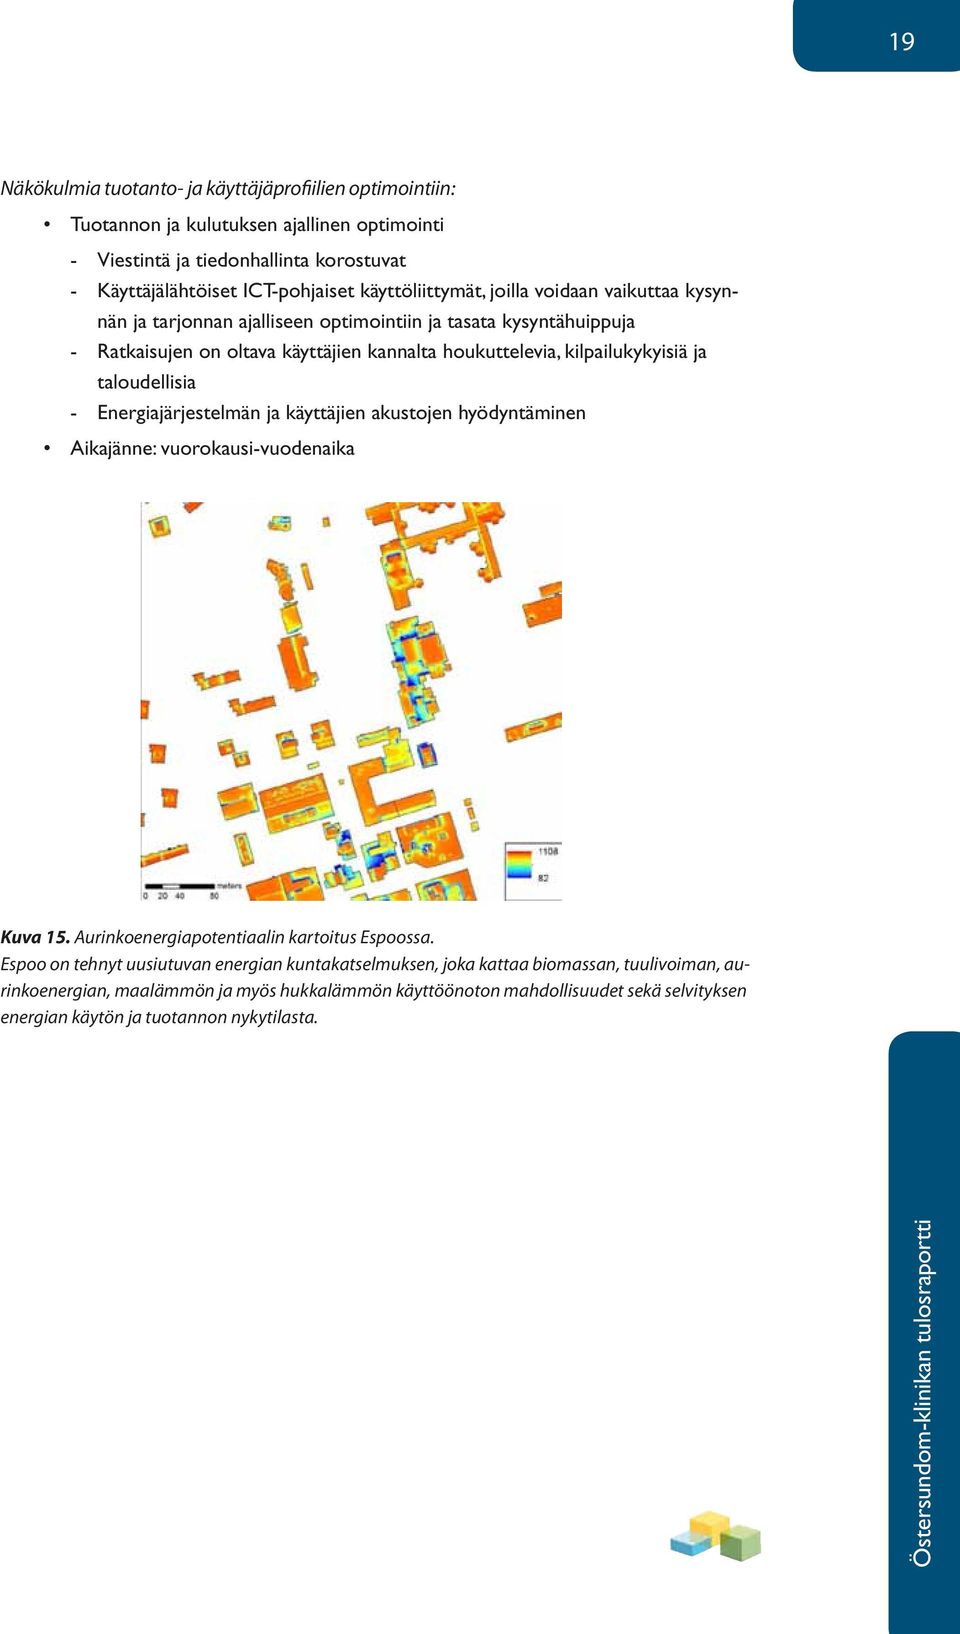 ja taloudellisia Energiajärjestelmän ja käyttäjien akustojen hyödyntäminen Aikajänne: vuorokausi-vuodenaika Kuva 15. Aurinkoenergiapotentiaalin kartoitus Espoossa.